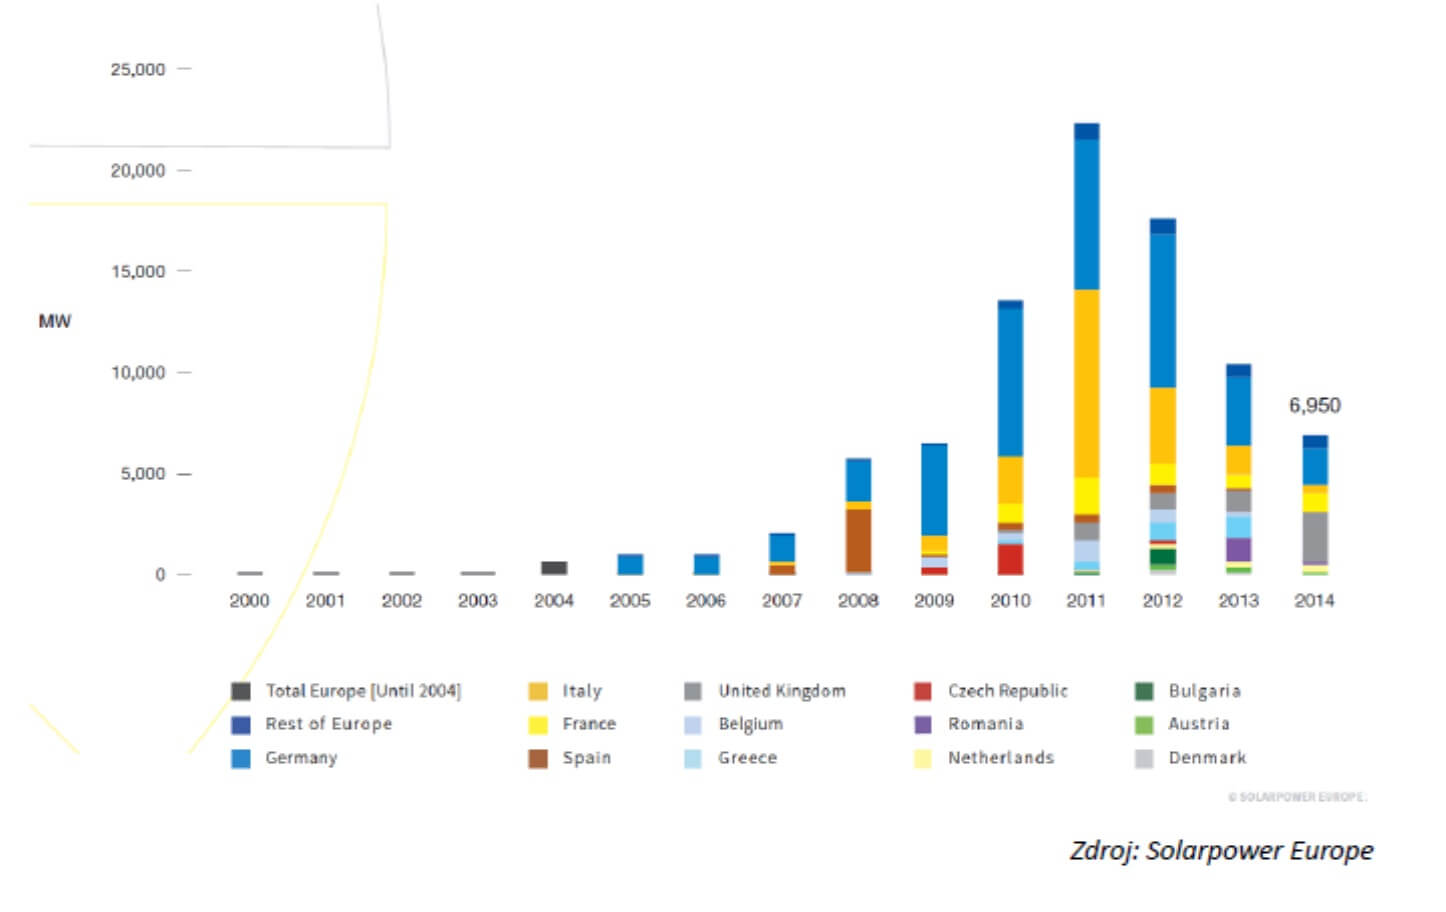 Roční nově instalovaný výkon fotovoltaických elektráren má v Evropě za sebou maximum v letech 2010 až 2012. Vývoj tehdy udávalo hlavně Německo a Itálie. Nyní se situace po poklesu stabilizovala. V roce 2015 bylo instalováno 8 GWp, v roce 2016 pak 6,7 GWp a v roce 2017 je výhled instalovat zhruba 7,5 GWp. (Zdroj Solarpower Europe).